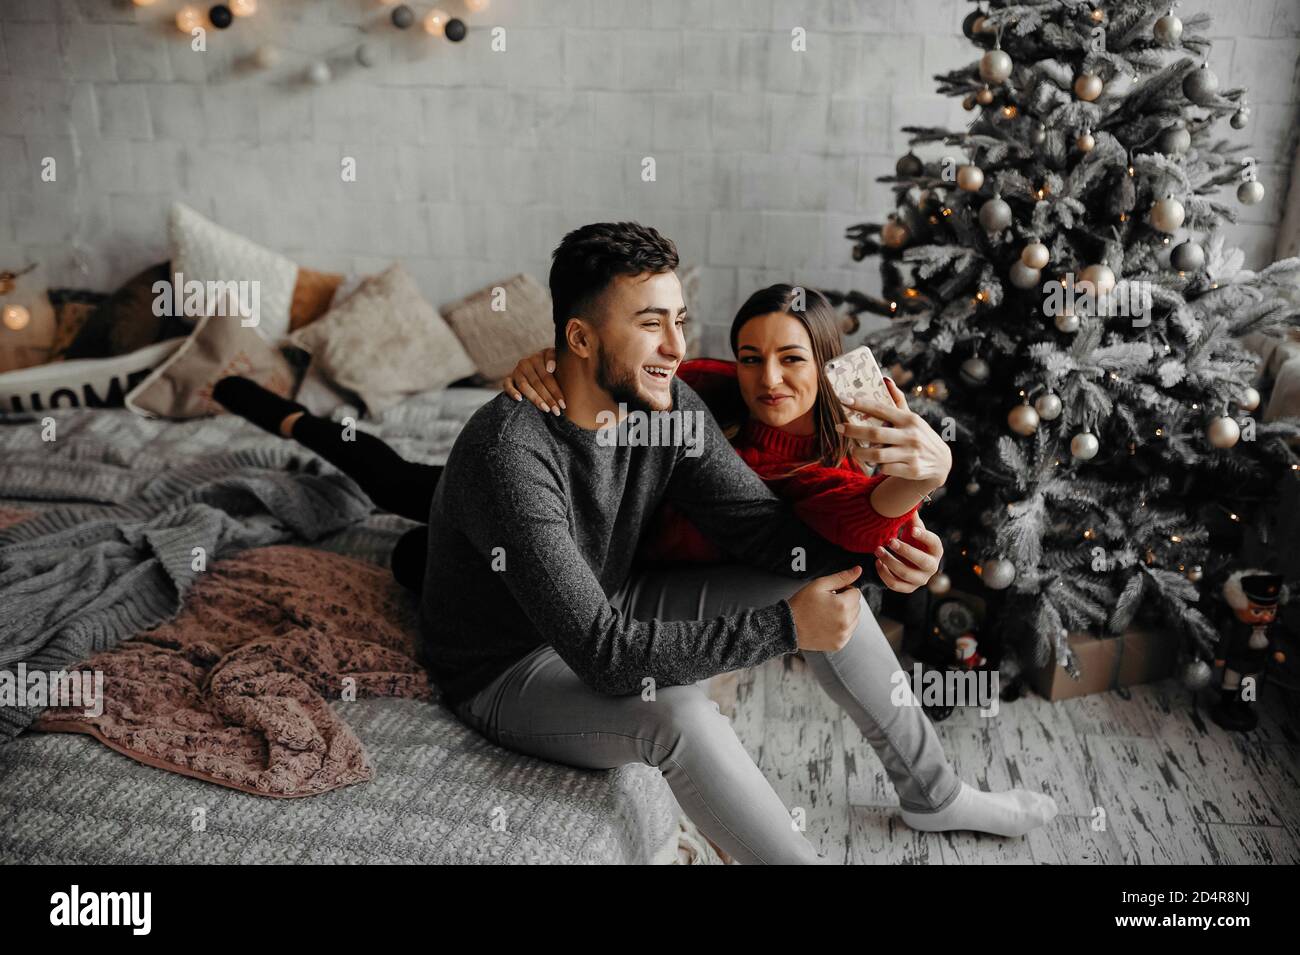 Glückliches junges Paar, das zu Hause Selfie macht, Spaß hat, auf einem gemütlichen Bett zu liegen und neben einem Weihnachtsbaum zu lachen Stockfoto